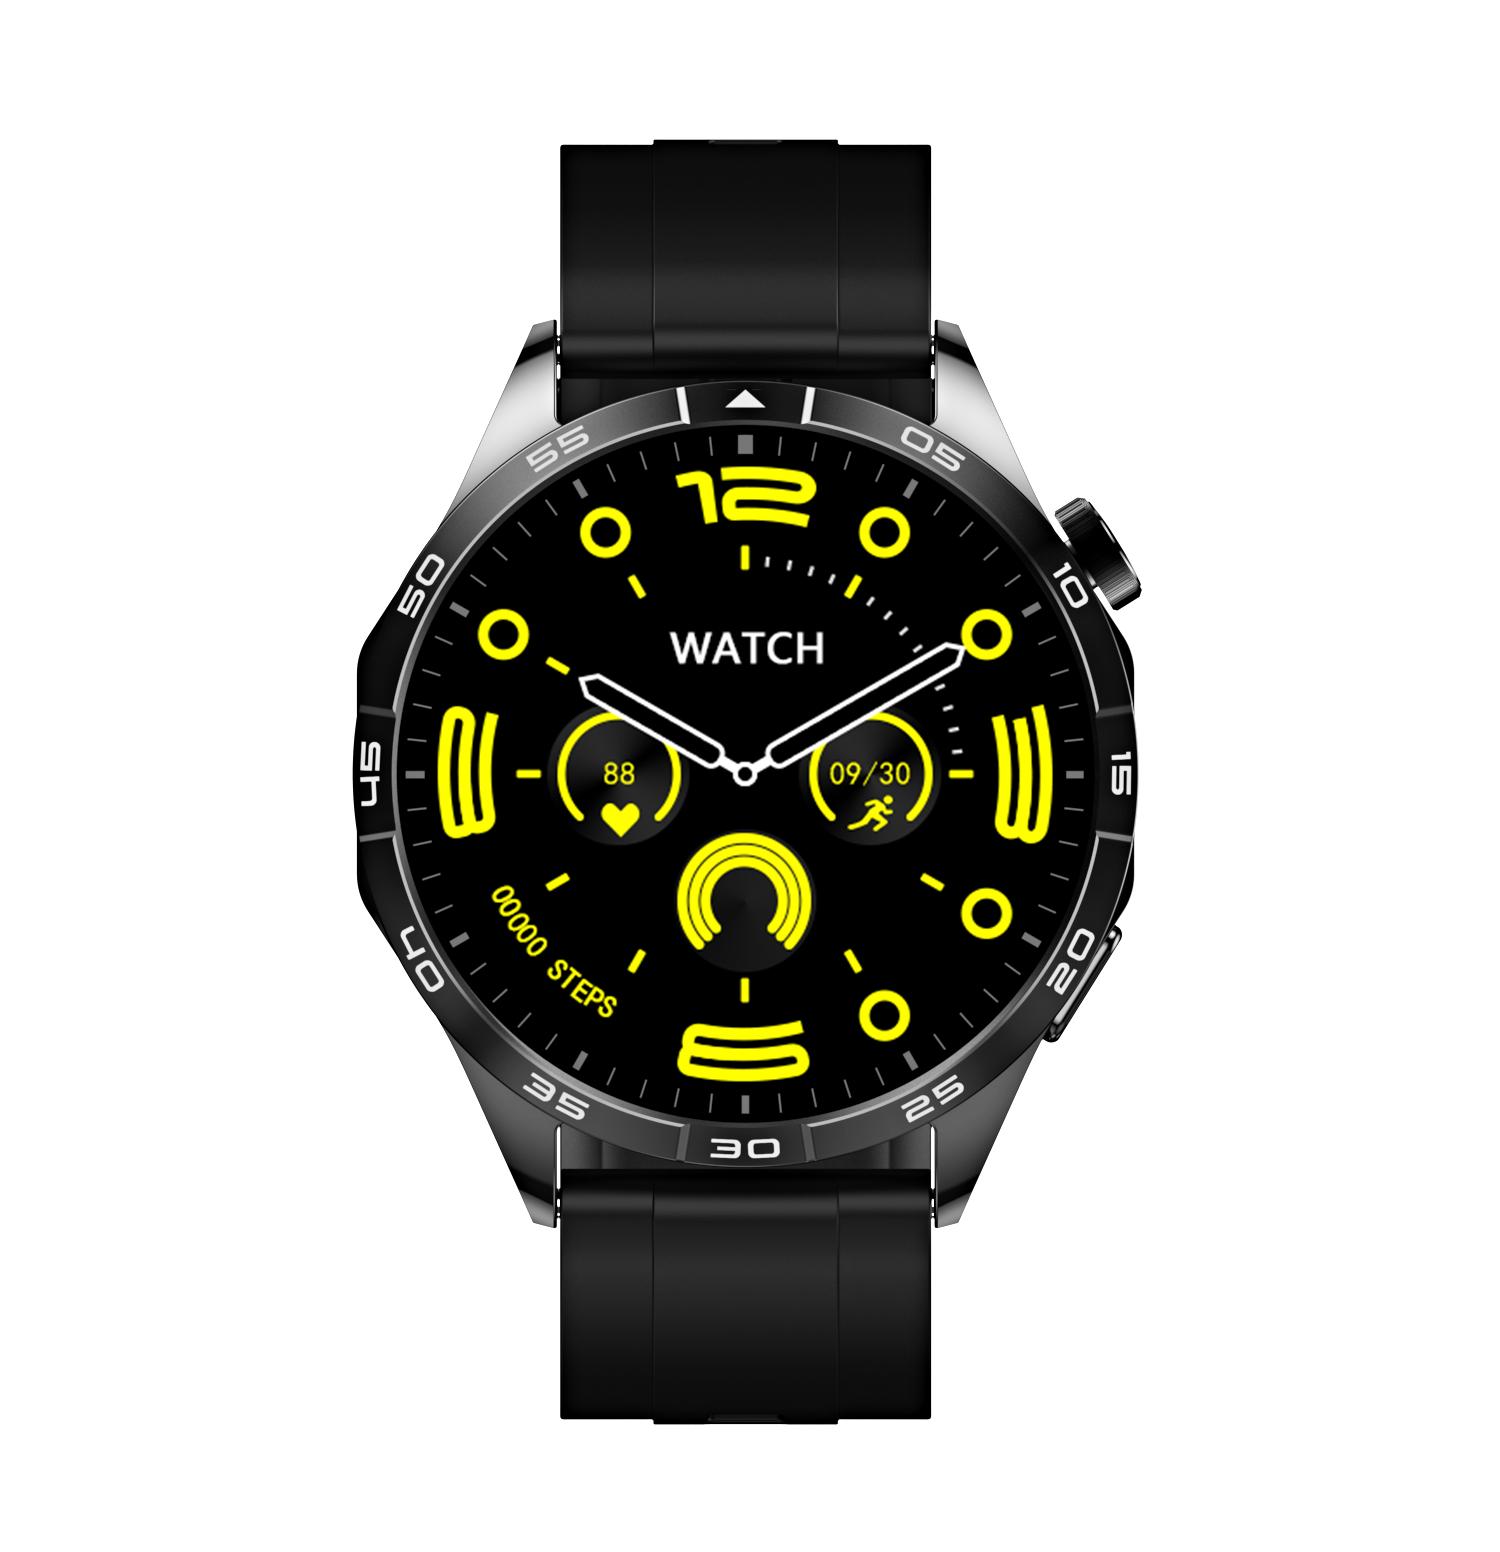 MIRUX FAMOGT4-SW BT-Anruf Tracker NFC Schwarz Silikon, Smartwatch Fitness